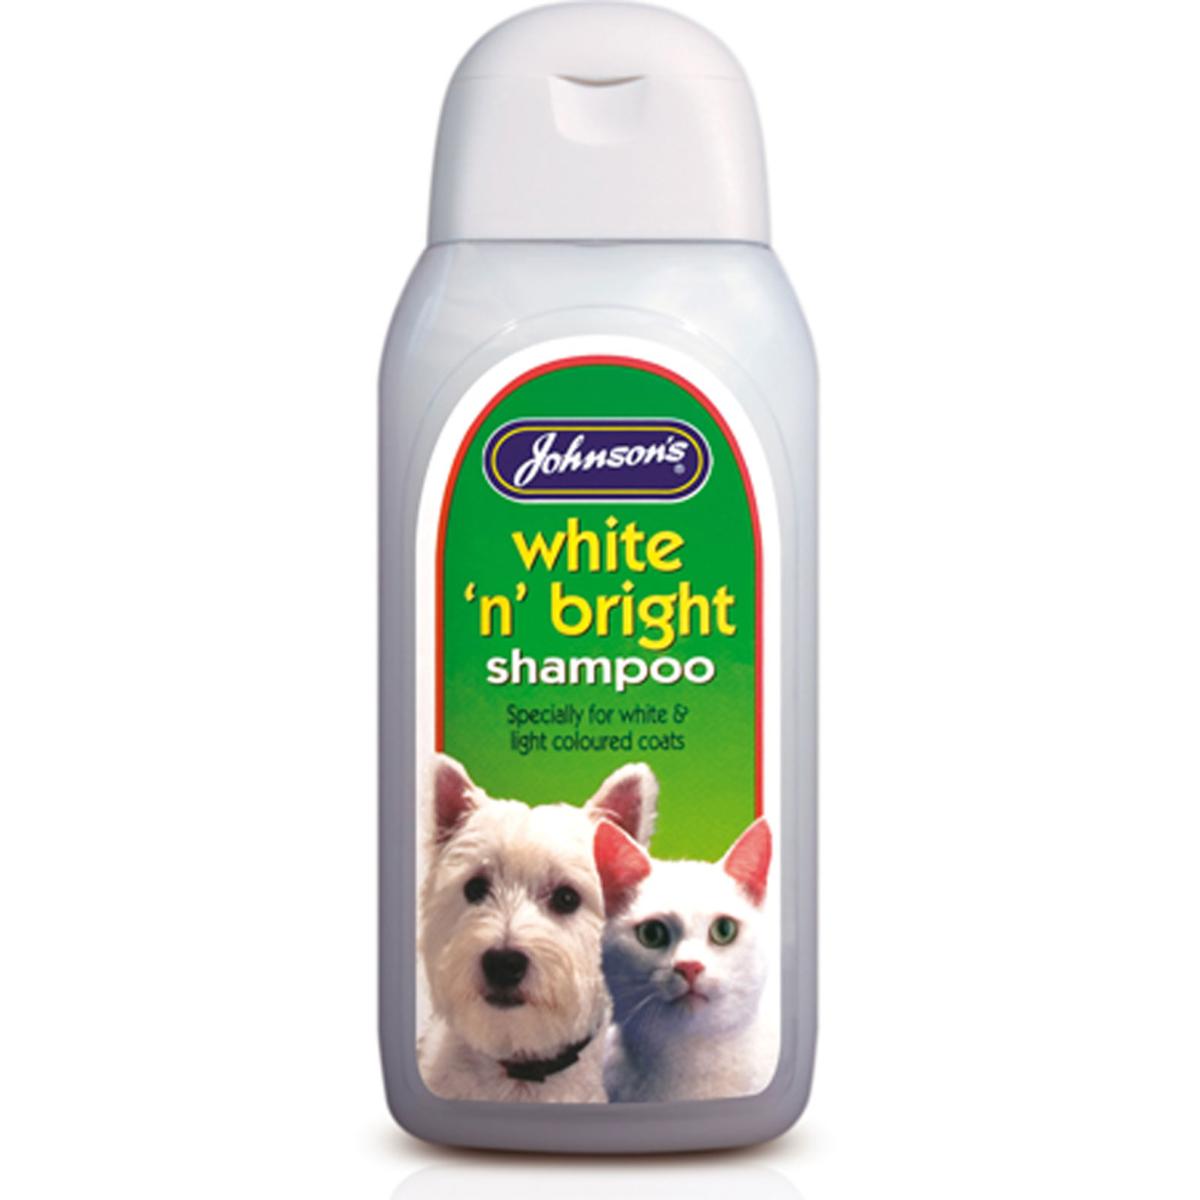 Johnson's White 'n' Bright Shampoo